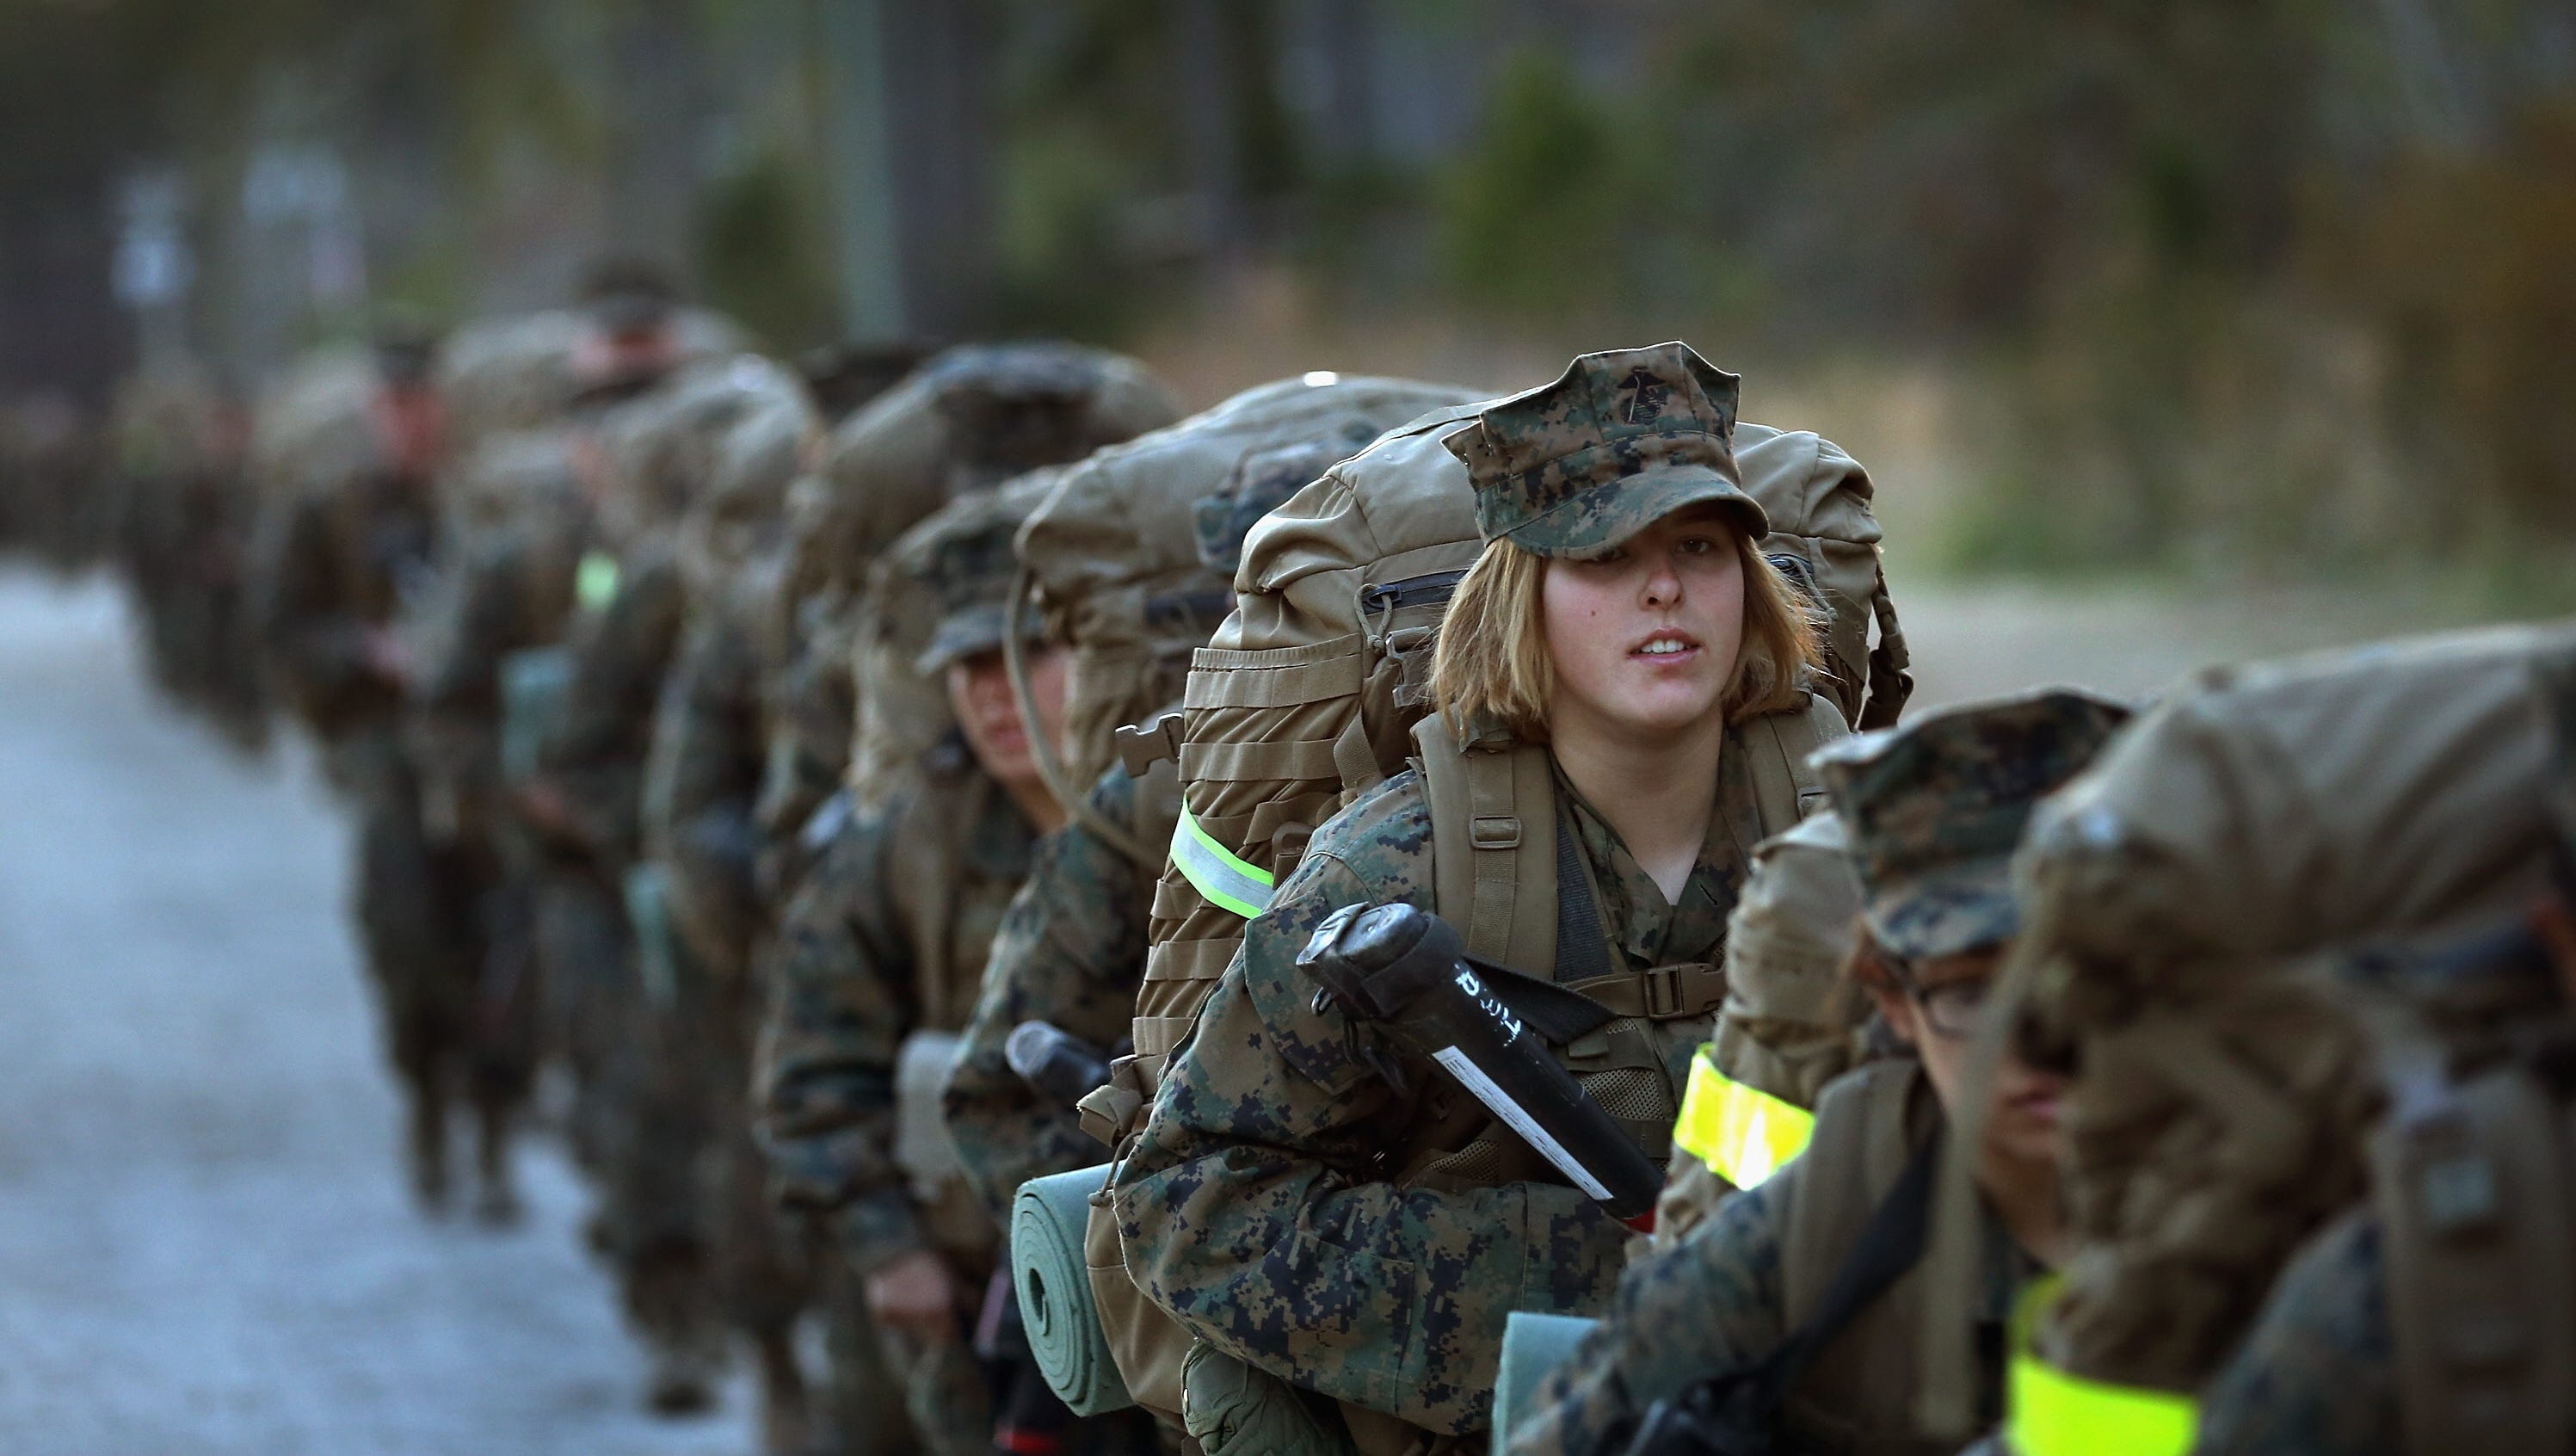 Установите группу военнослужащих женщин. Морская пехота США. Женщины военные. Женщины военнослужащие. Американские женщины военные.